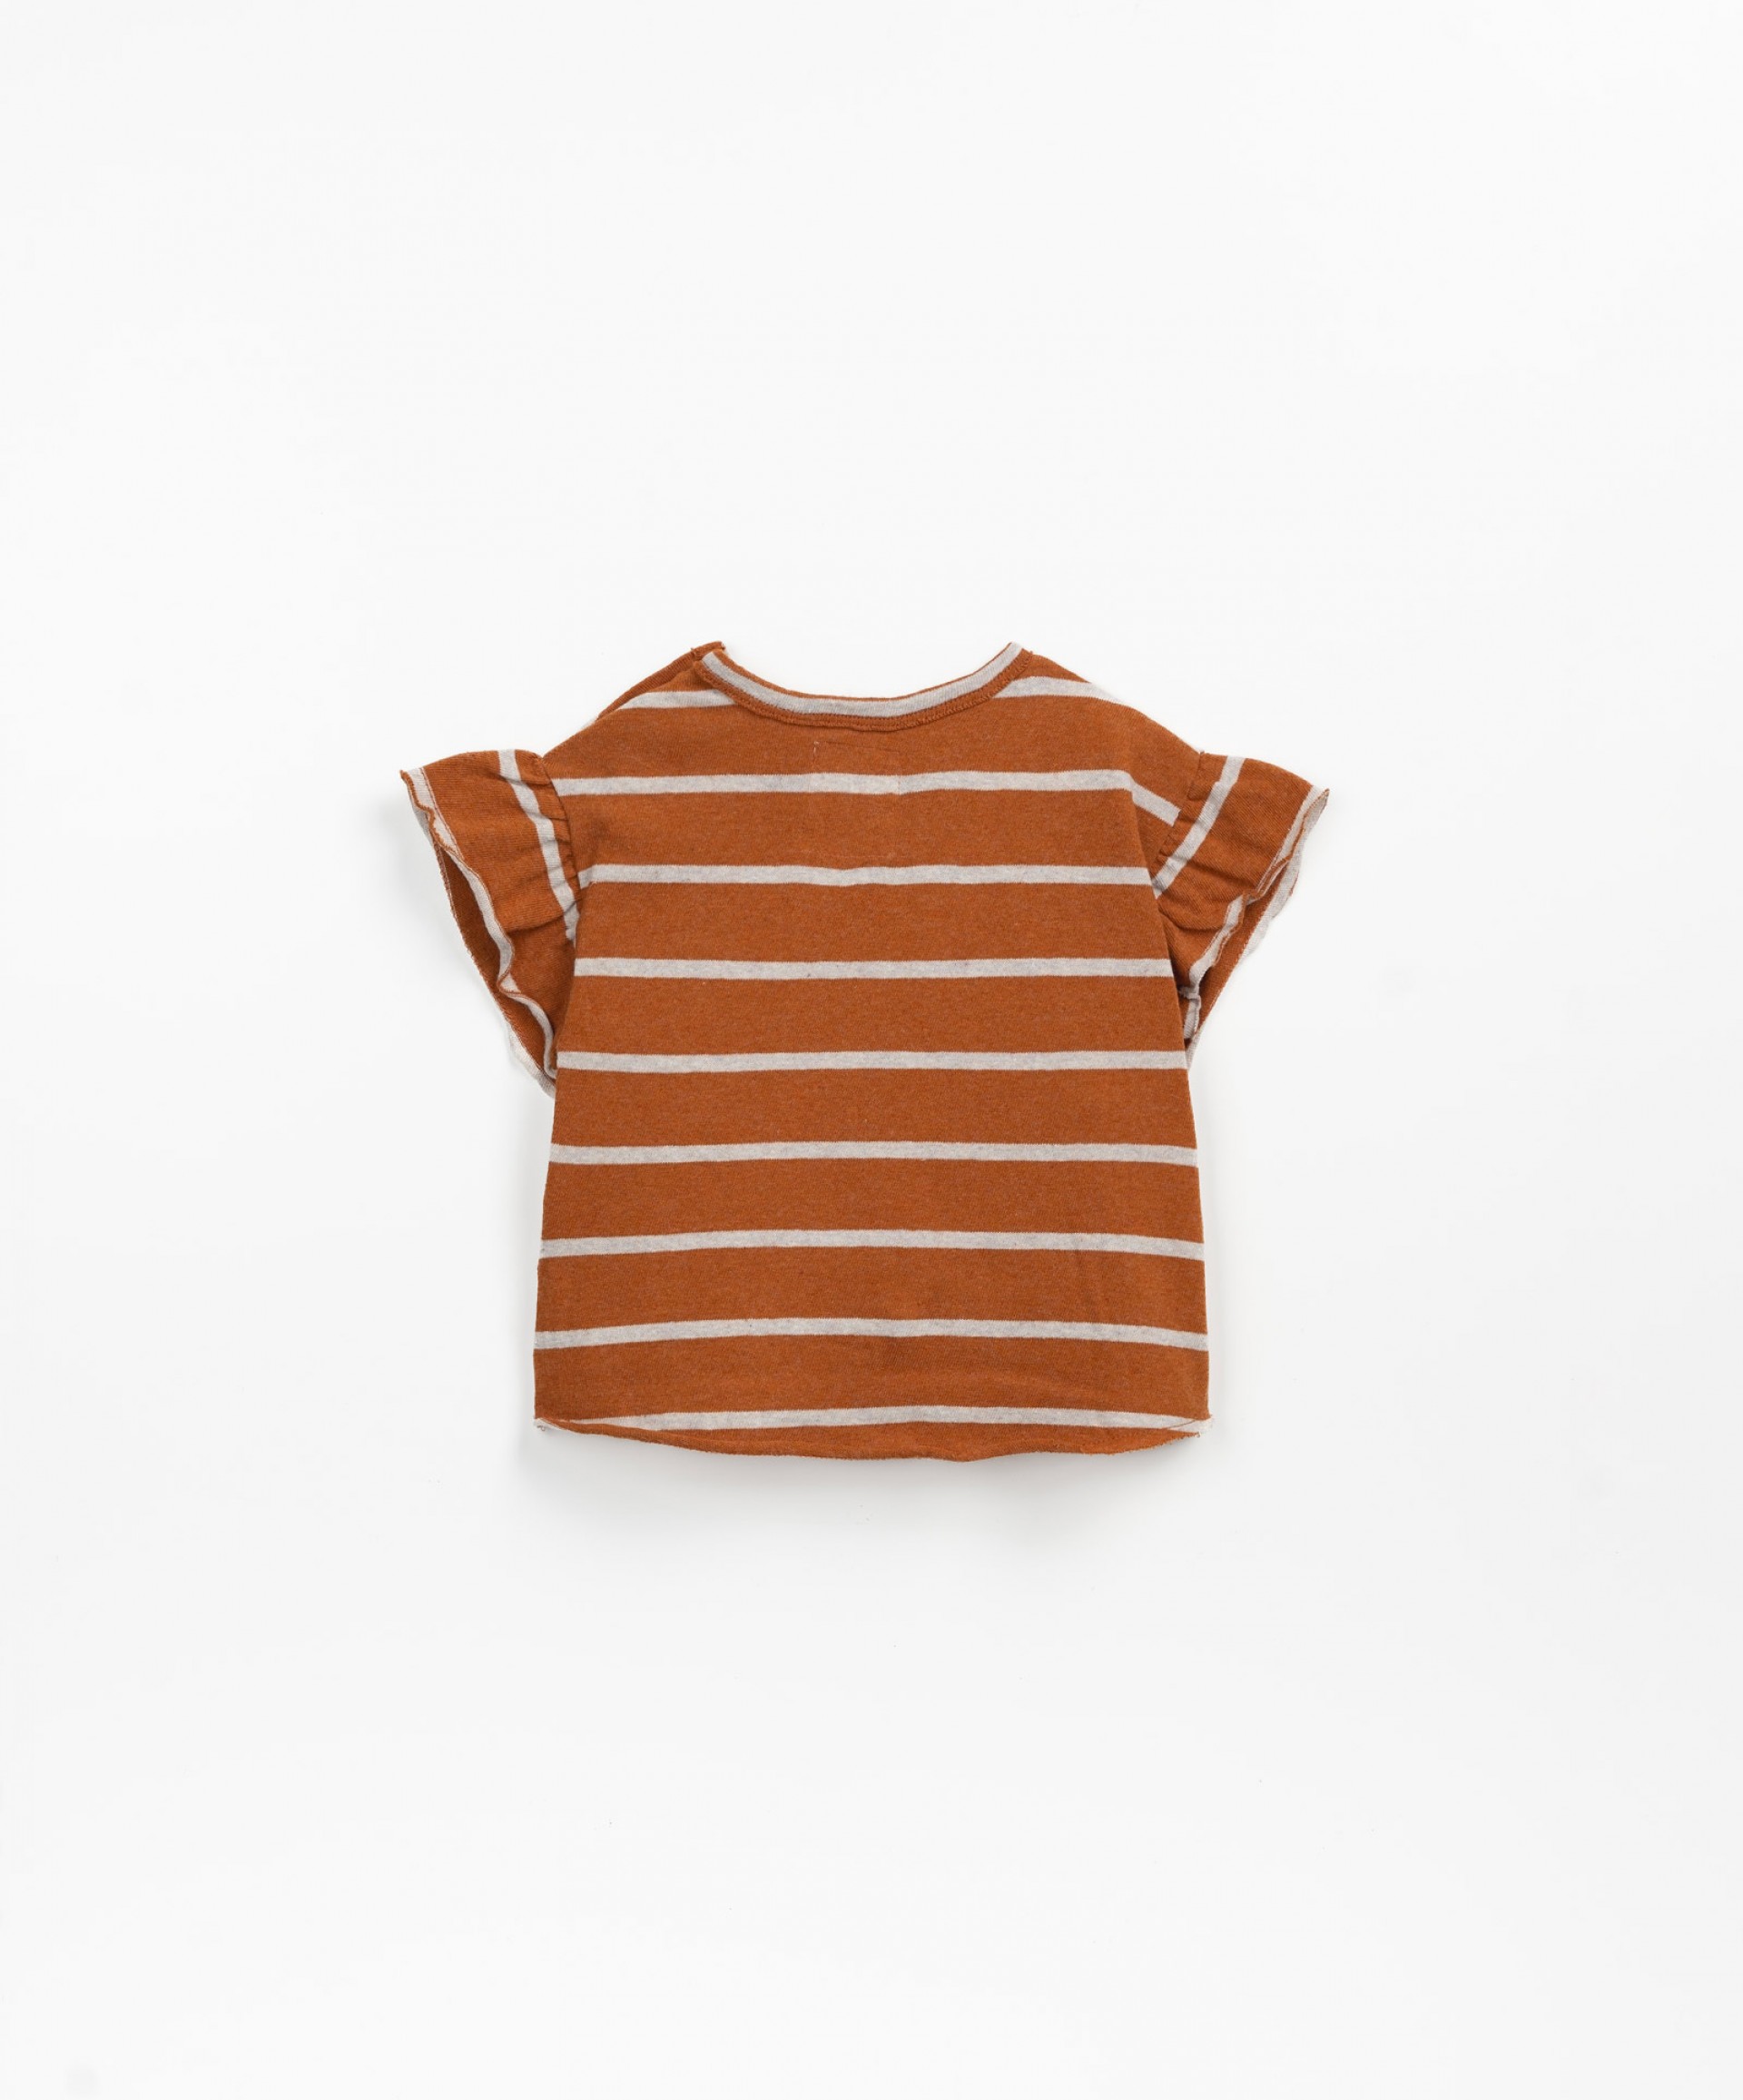 Camiseta de rayas con bolsillo en el pecho | Textile Art